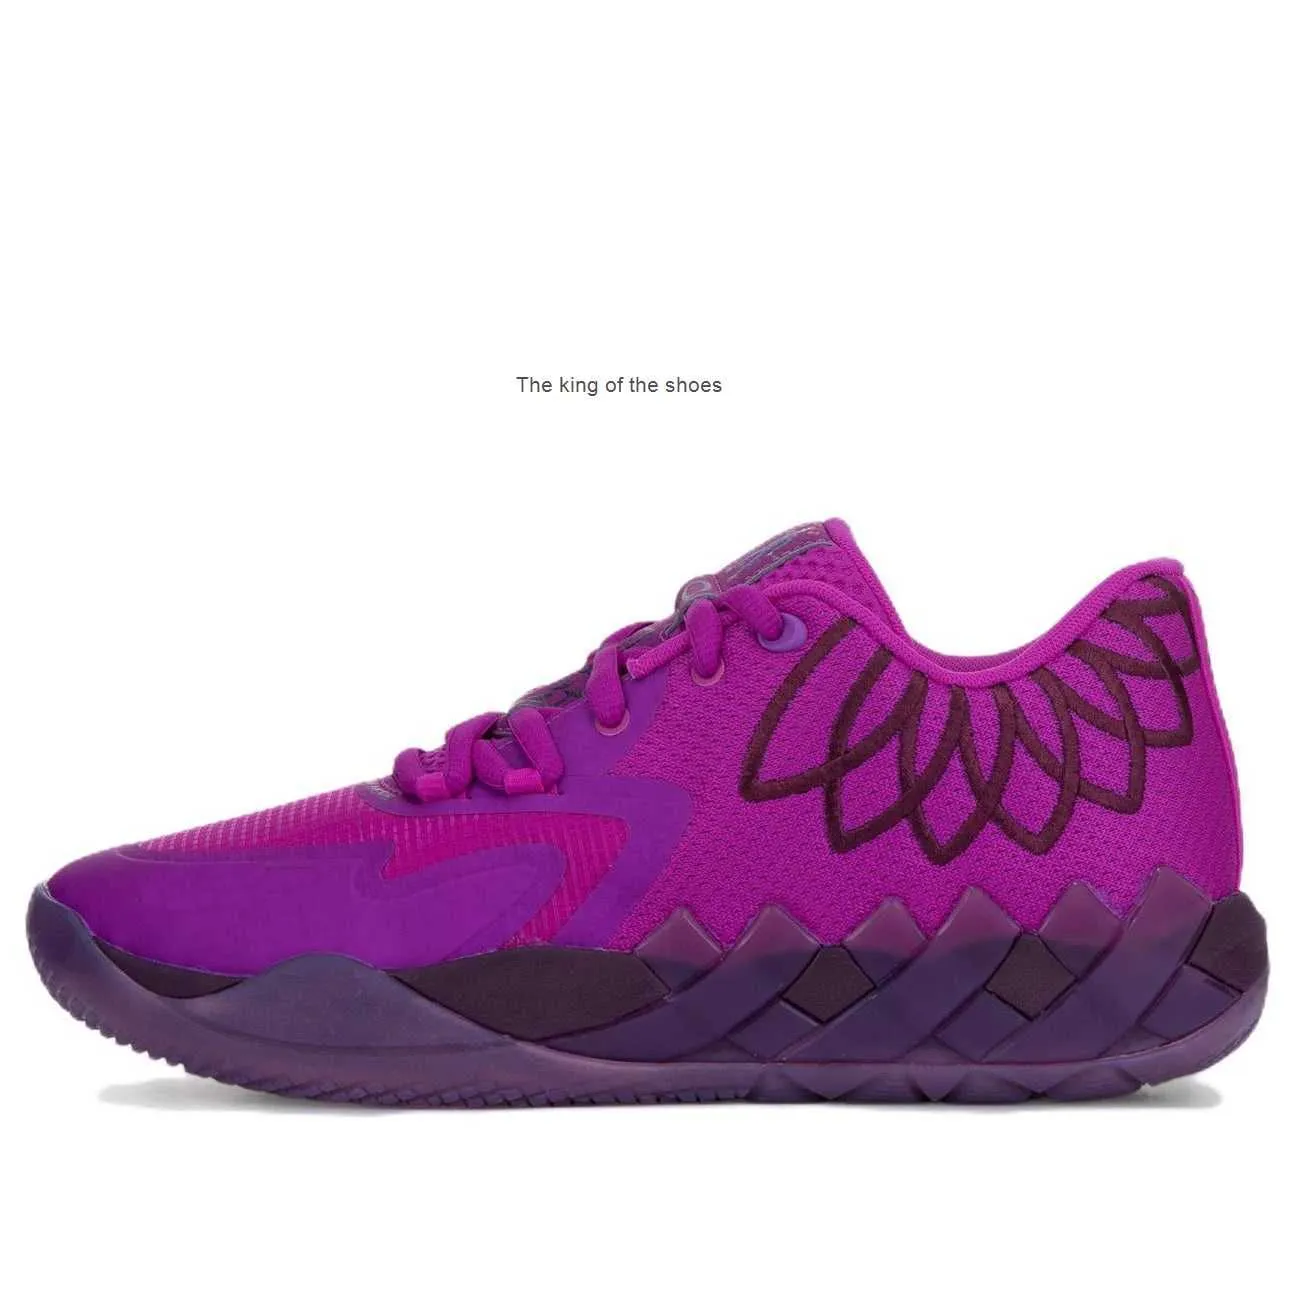 MBLaMelo Ball MB01 Lo Disco Purple chaussures à vendre avec boîte hommes femmes chaussures de basket-ball baskets US7.5-US12